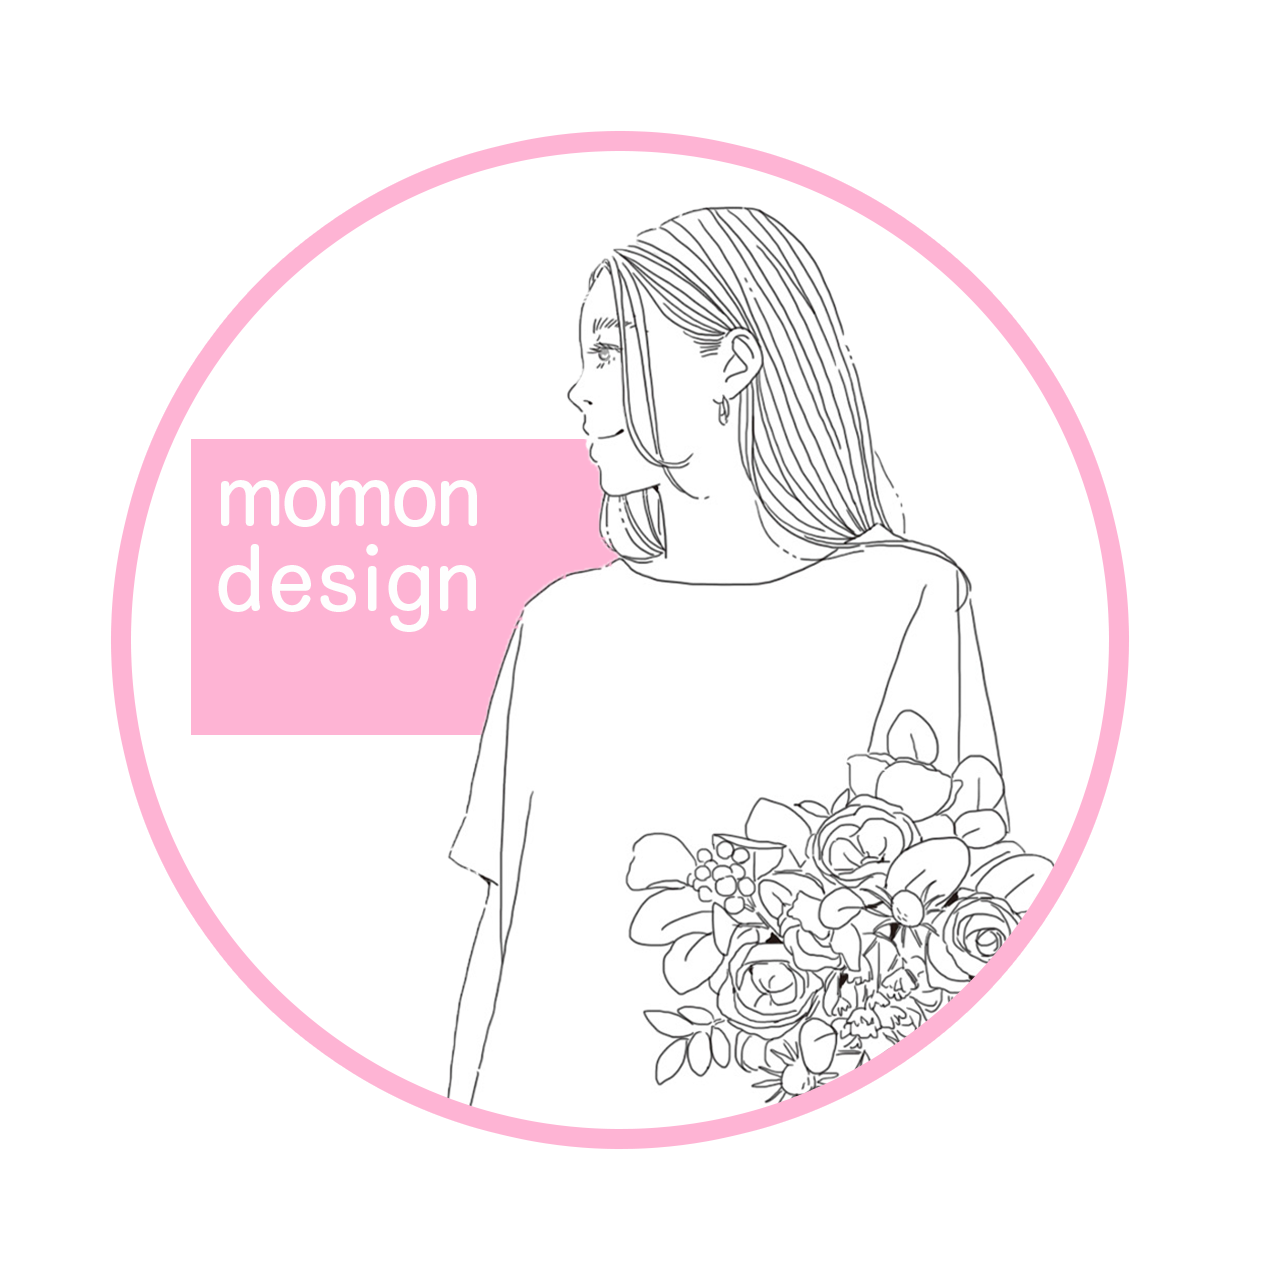 momon design